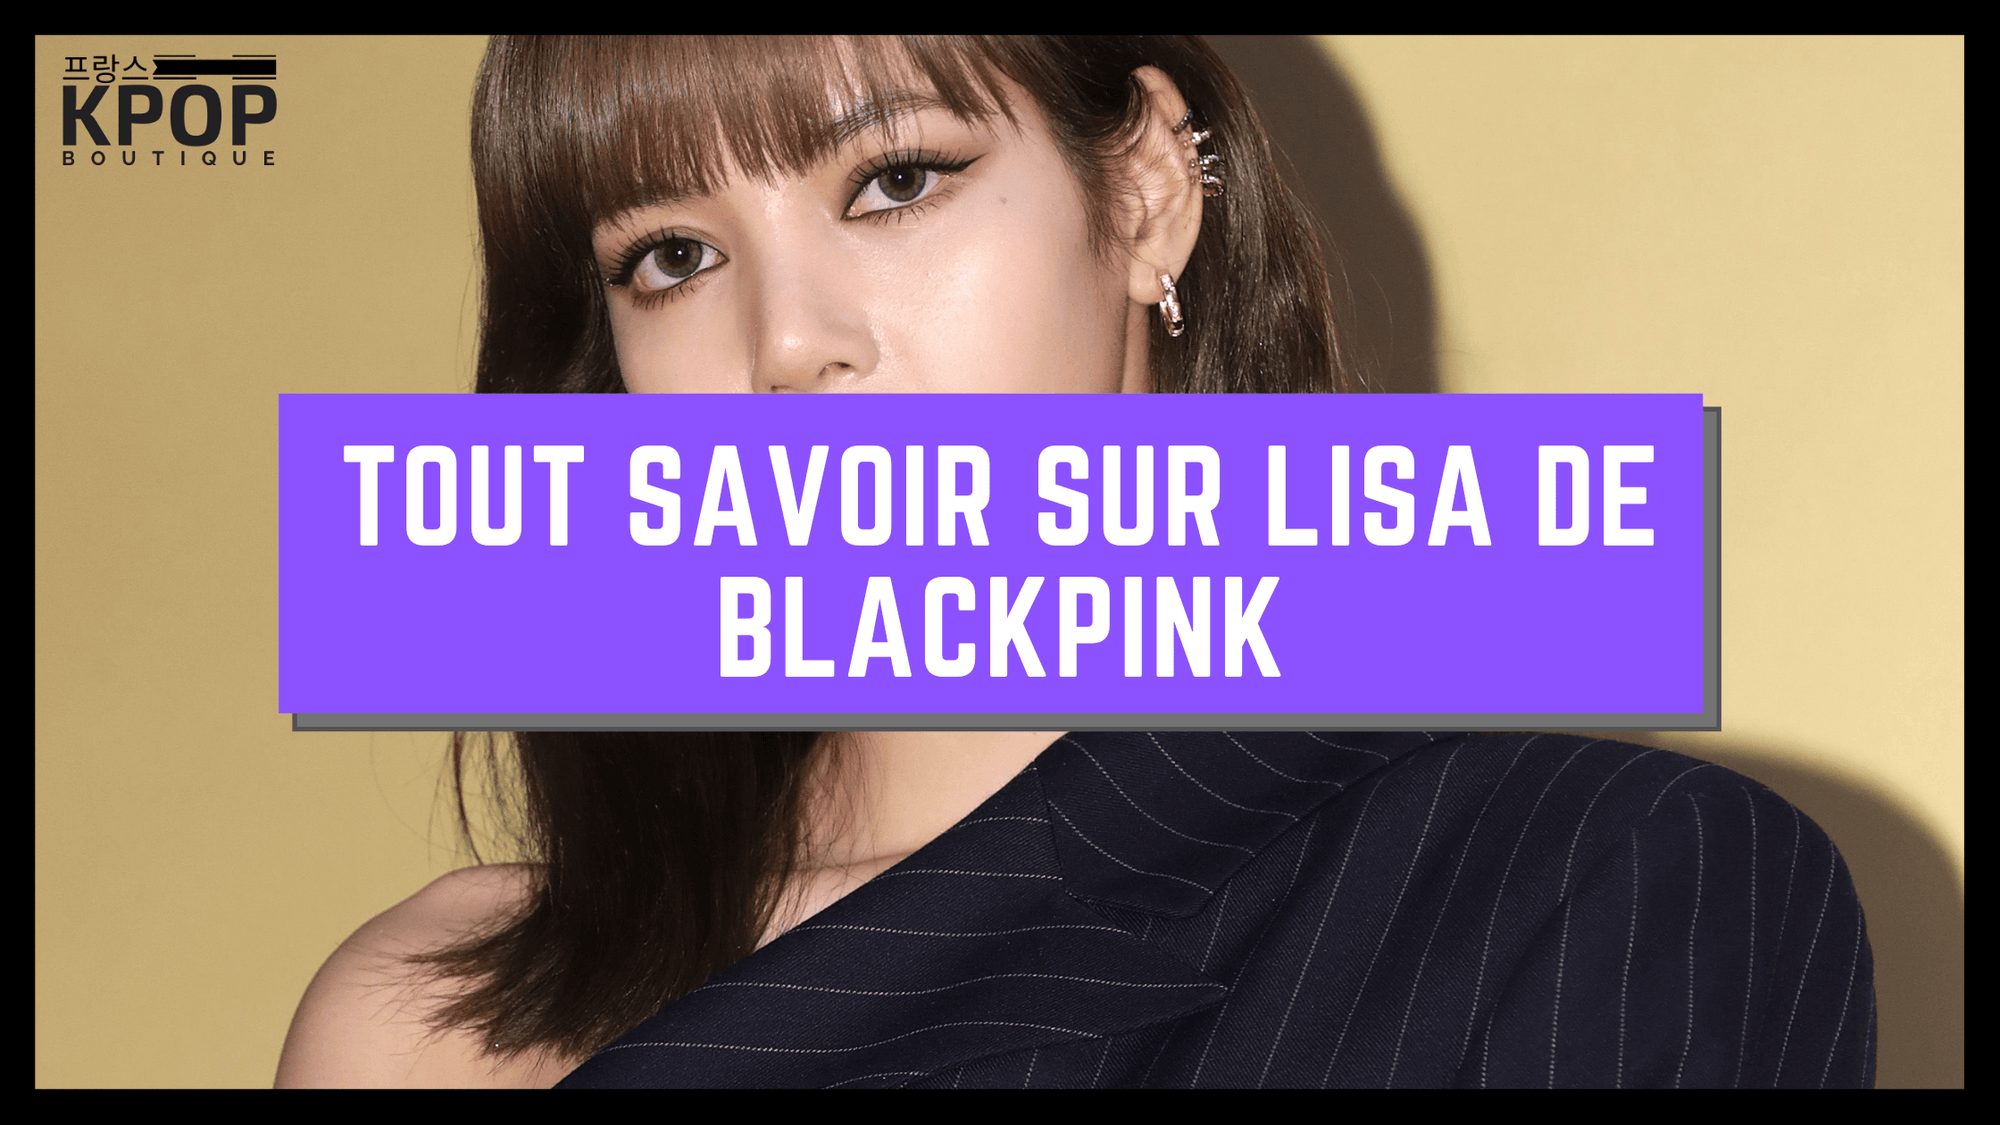 Lisa de Blackpink K-POP